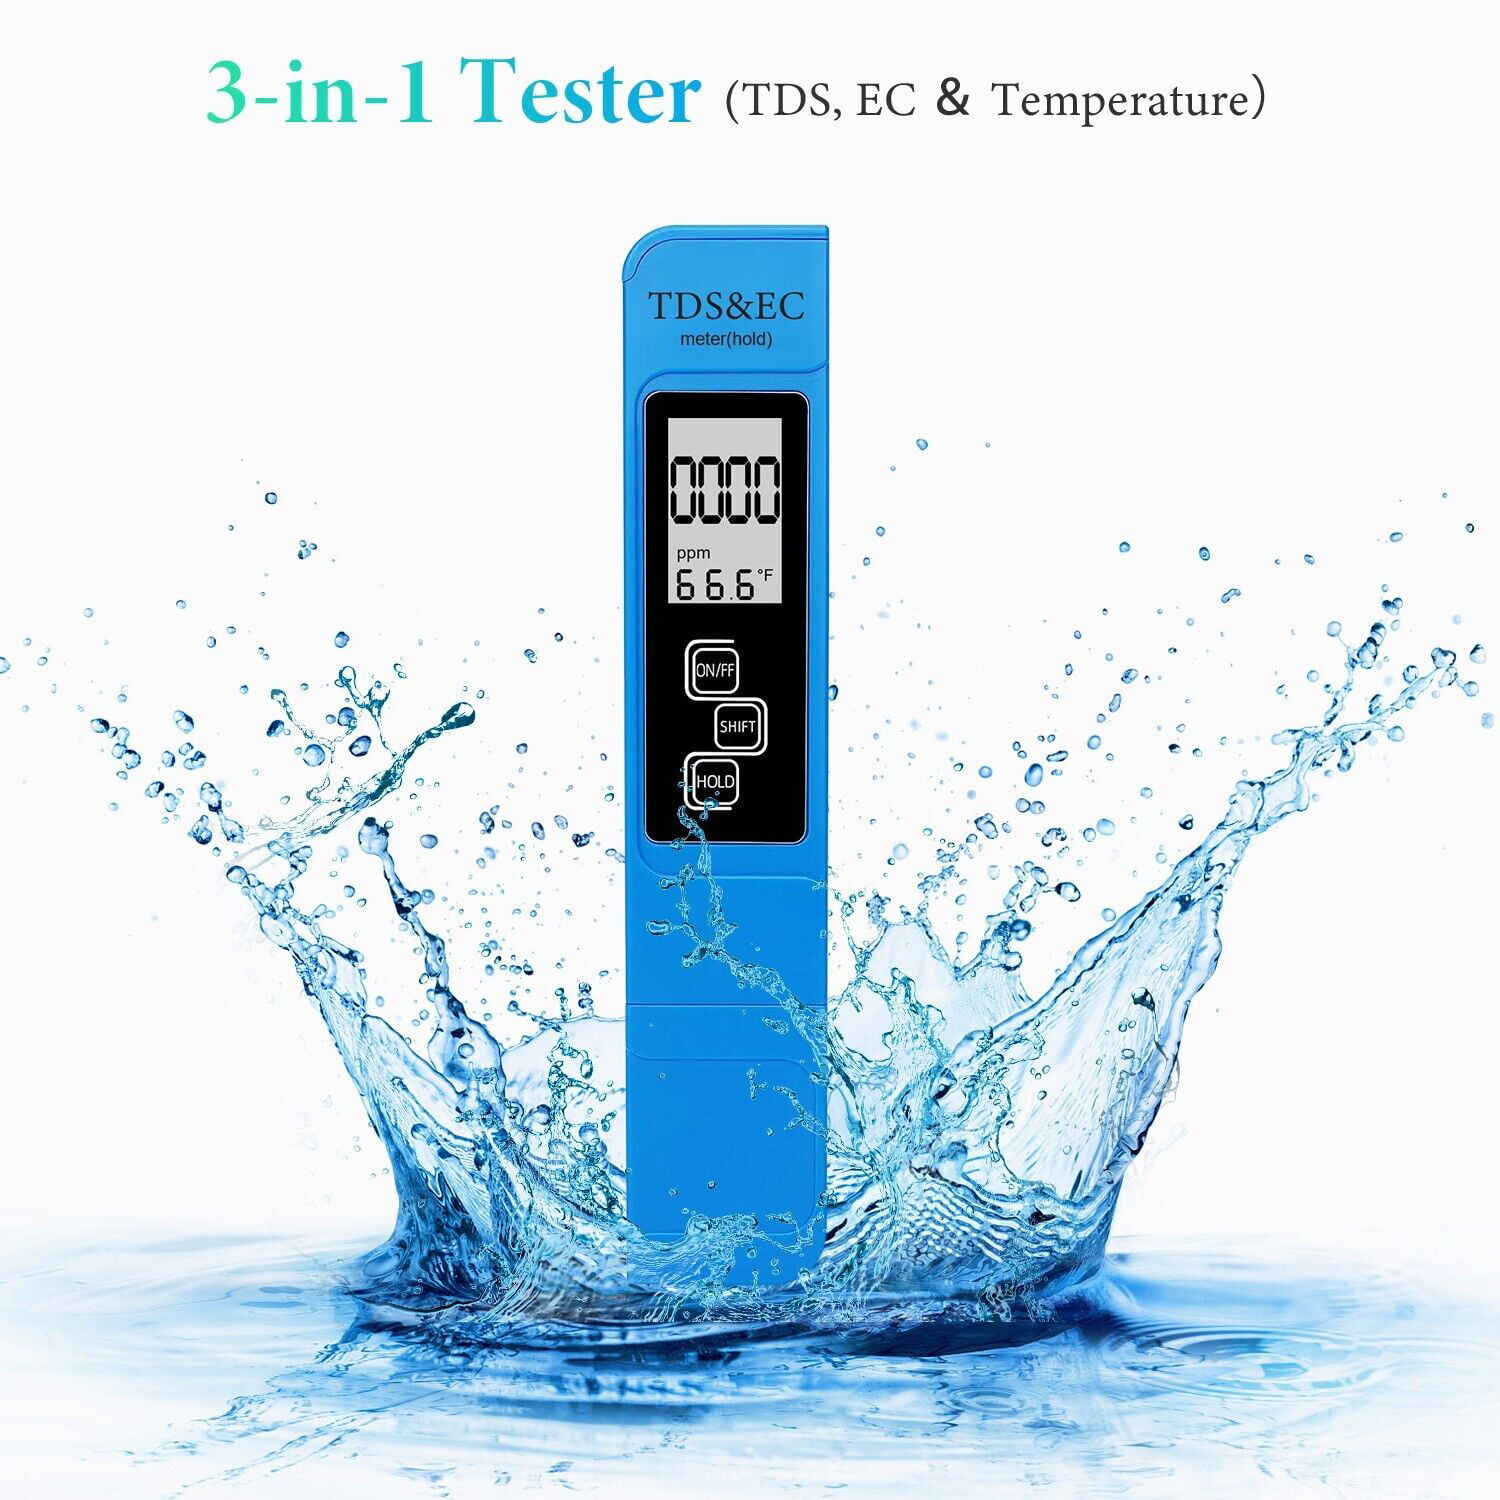 3 in 1 Tds Meter Digital Water Tester Temperature And Ec - Temu